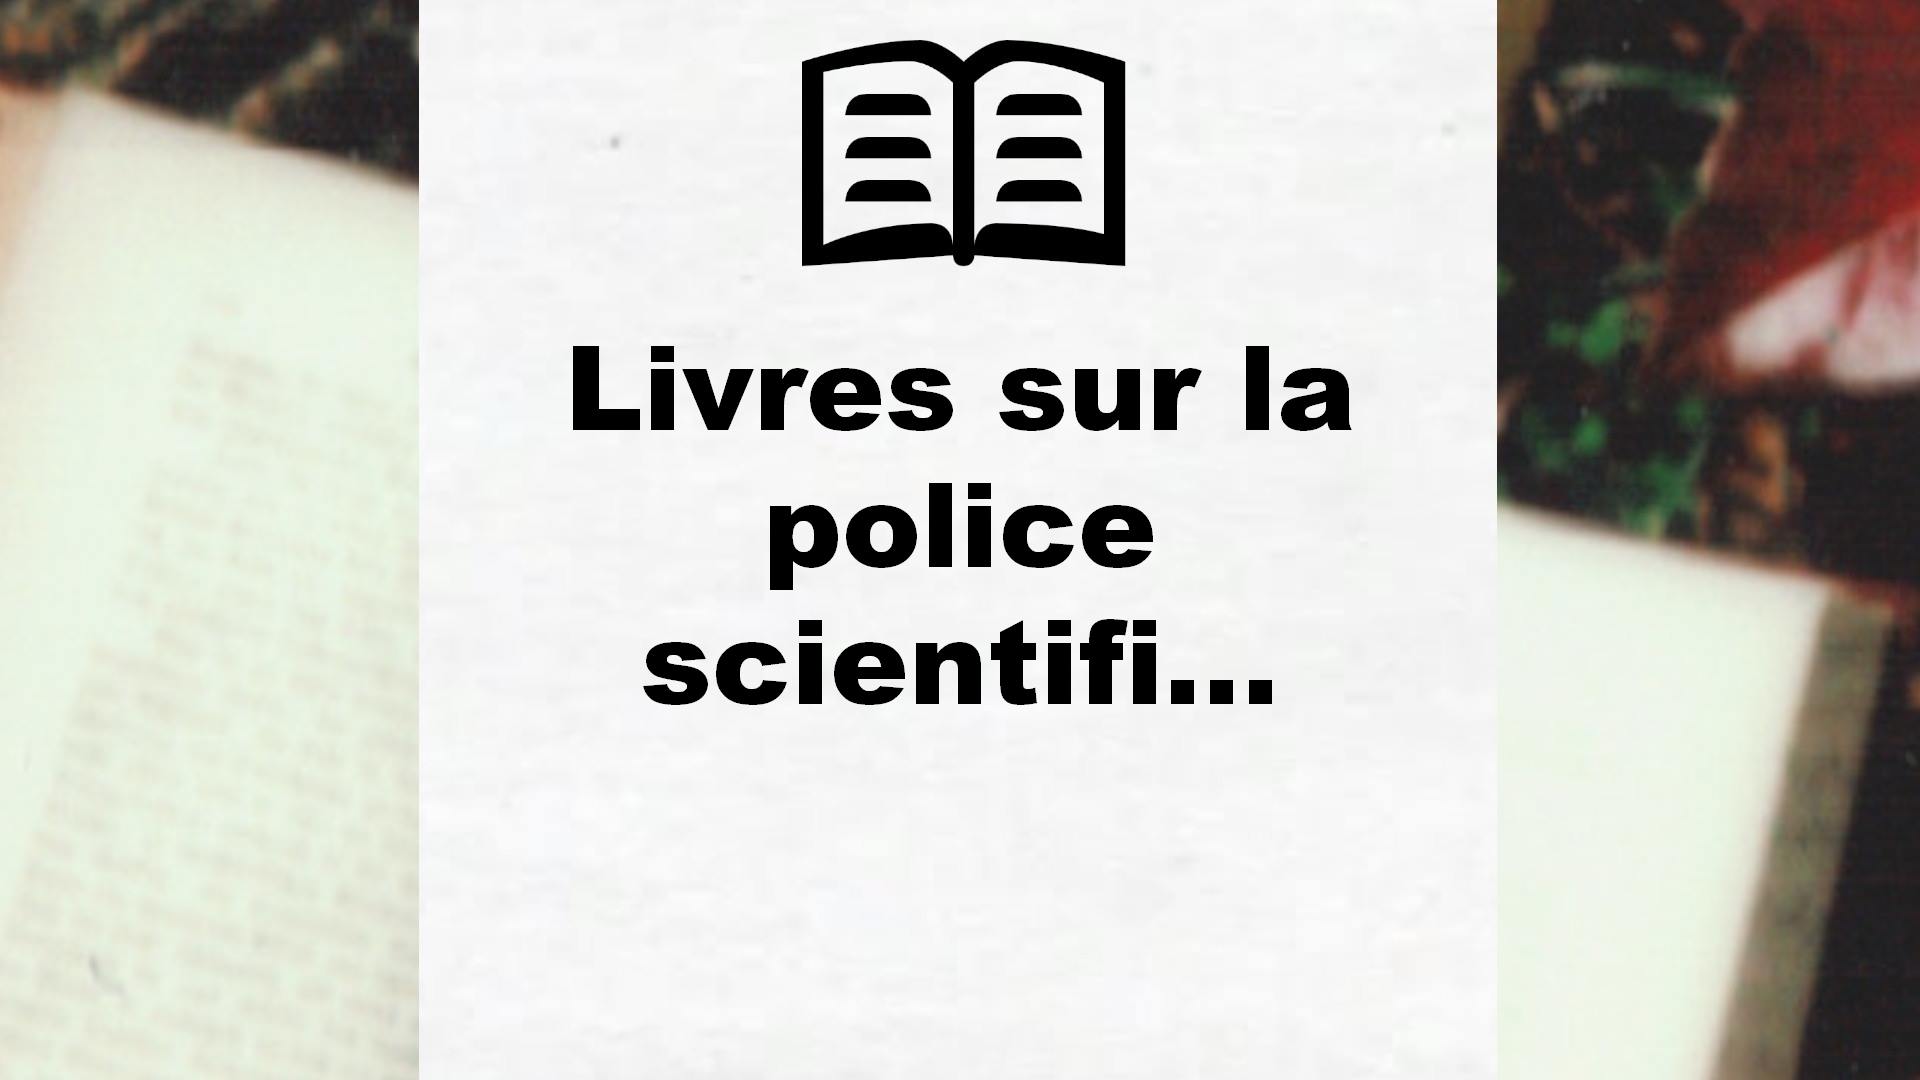 Livres sur la police scientifique